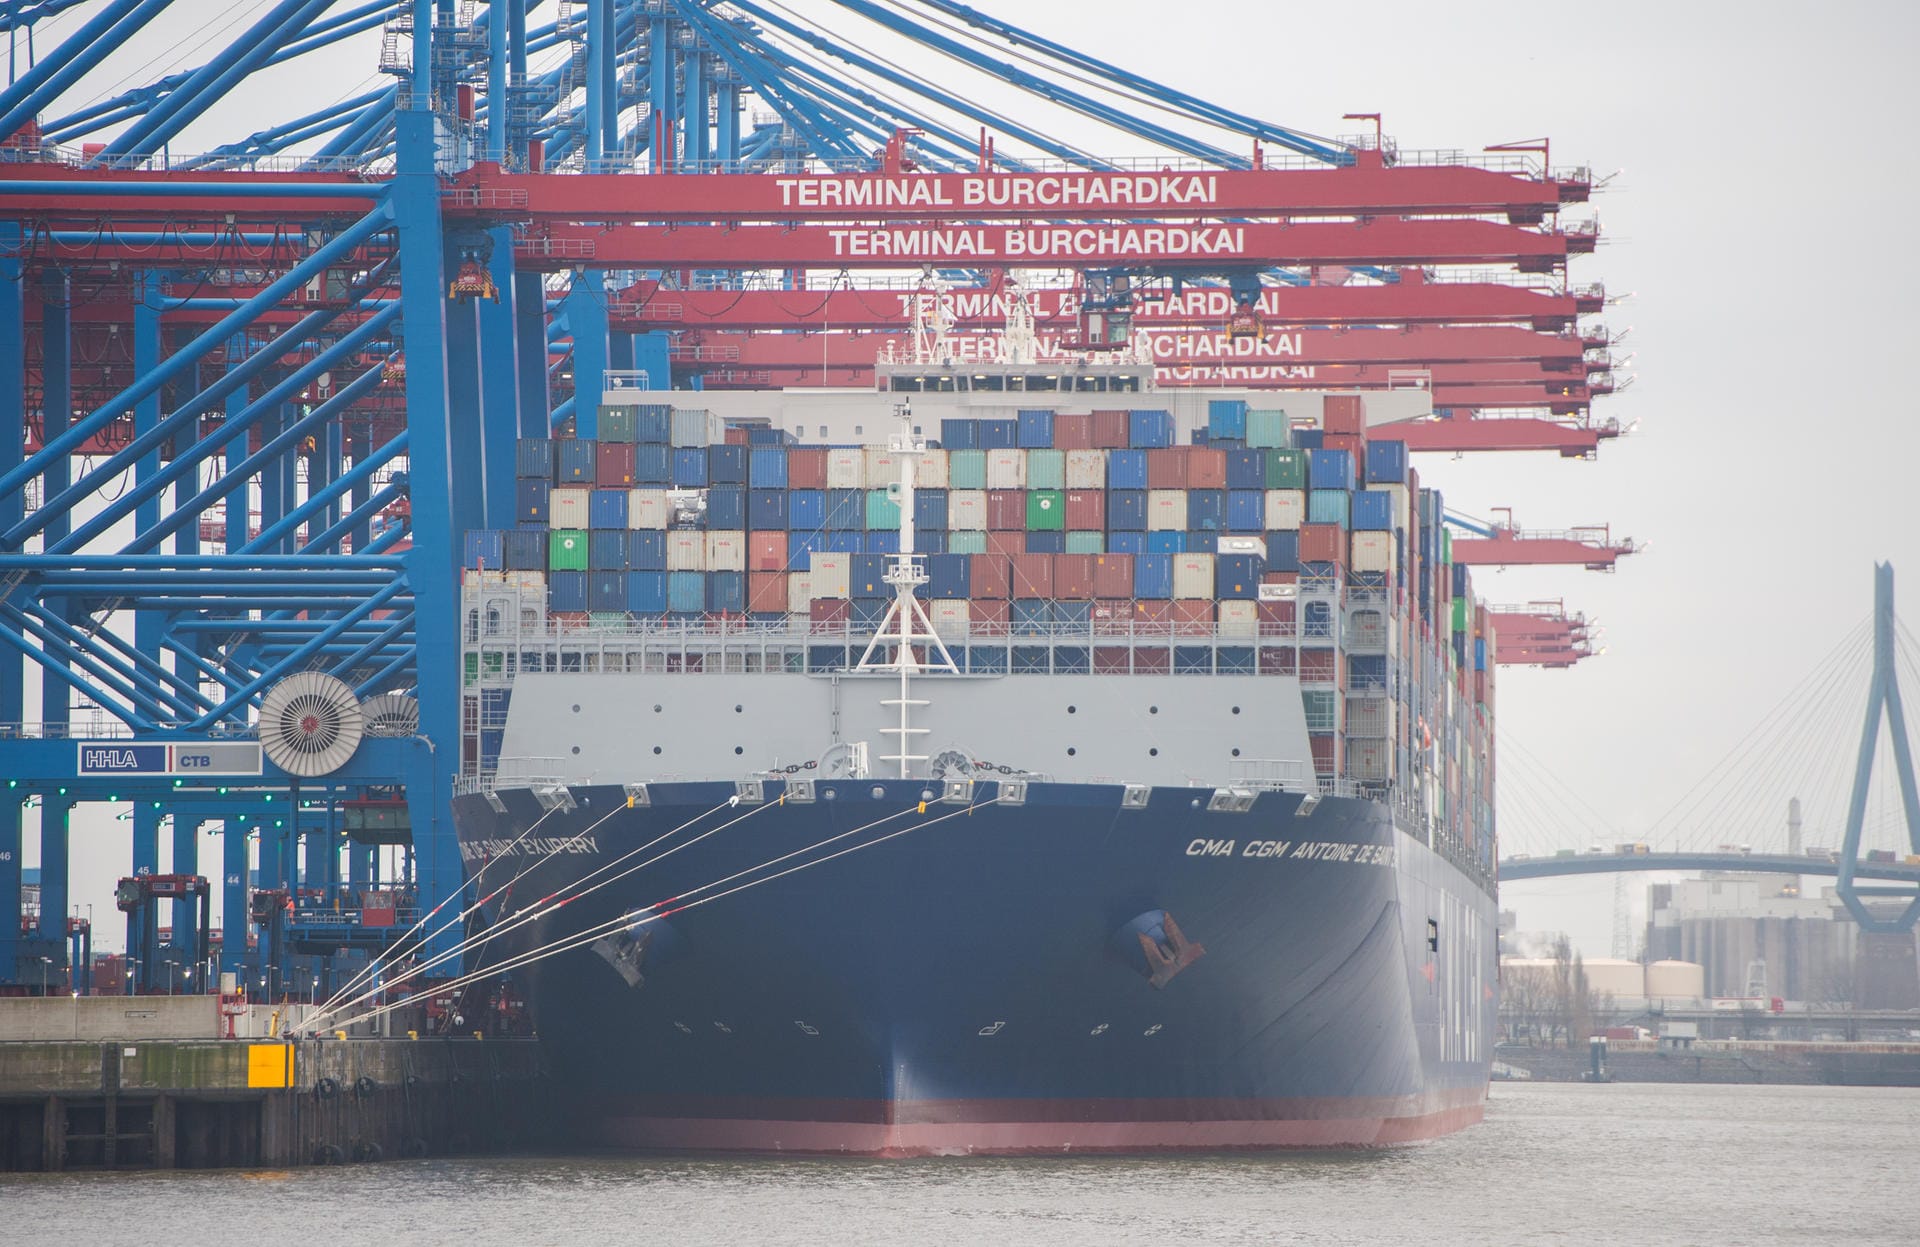 Nach Angaben des Hafens schlägt die "CMA CGM Antoine de Saint Exupéry" mit einer maximalen Ladekapazität von 20.600 Standardcontainern (TEU) den bisherigen Rekordhalter "Munich Maersk" (20.568 TEU.)